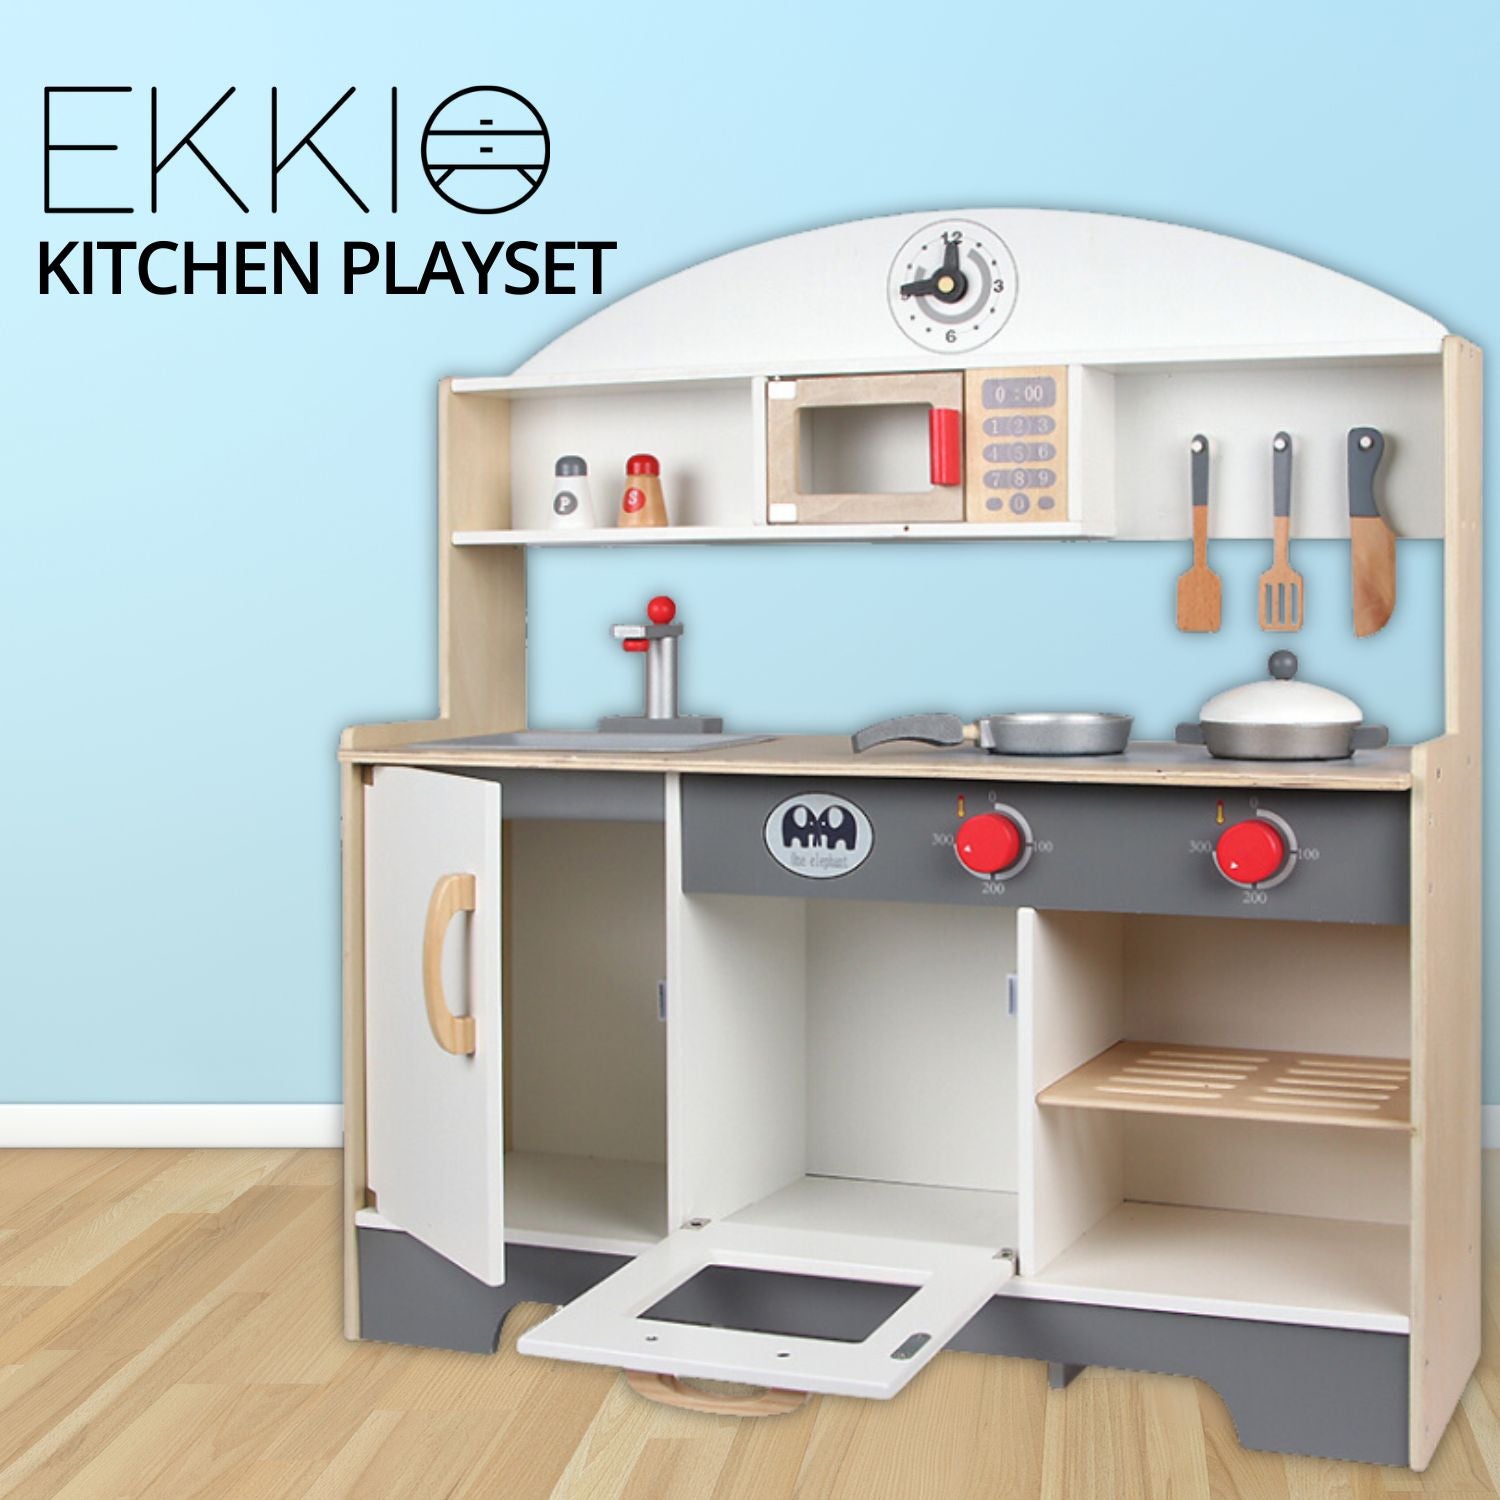 EKKIO Wooden Kitchen Playset for Kids (Minimalist)